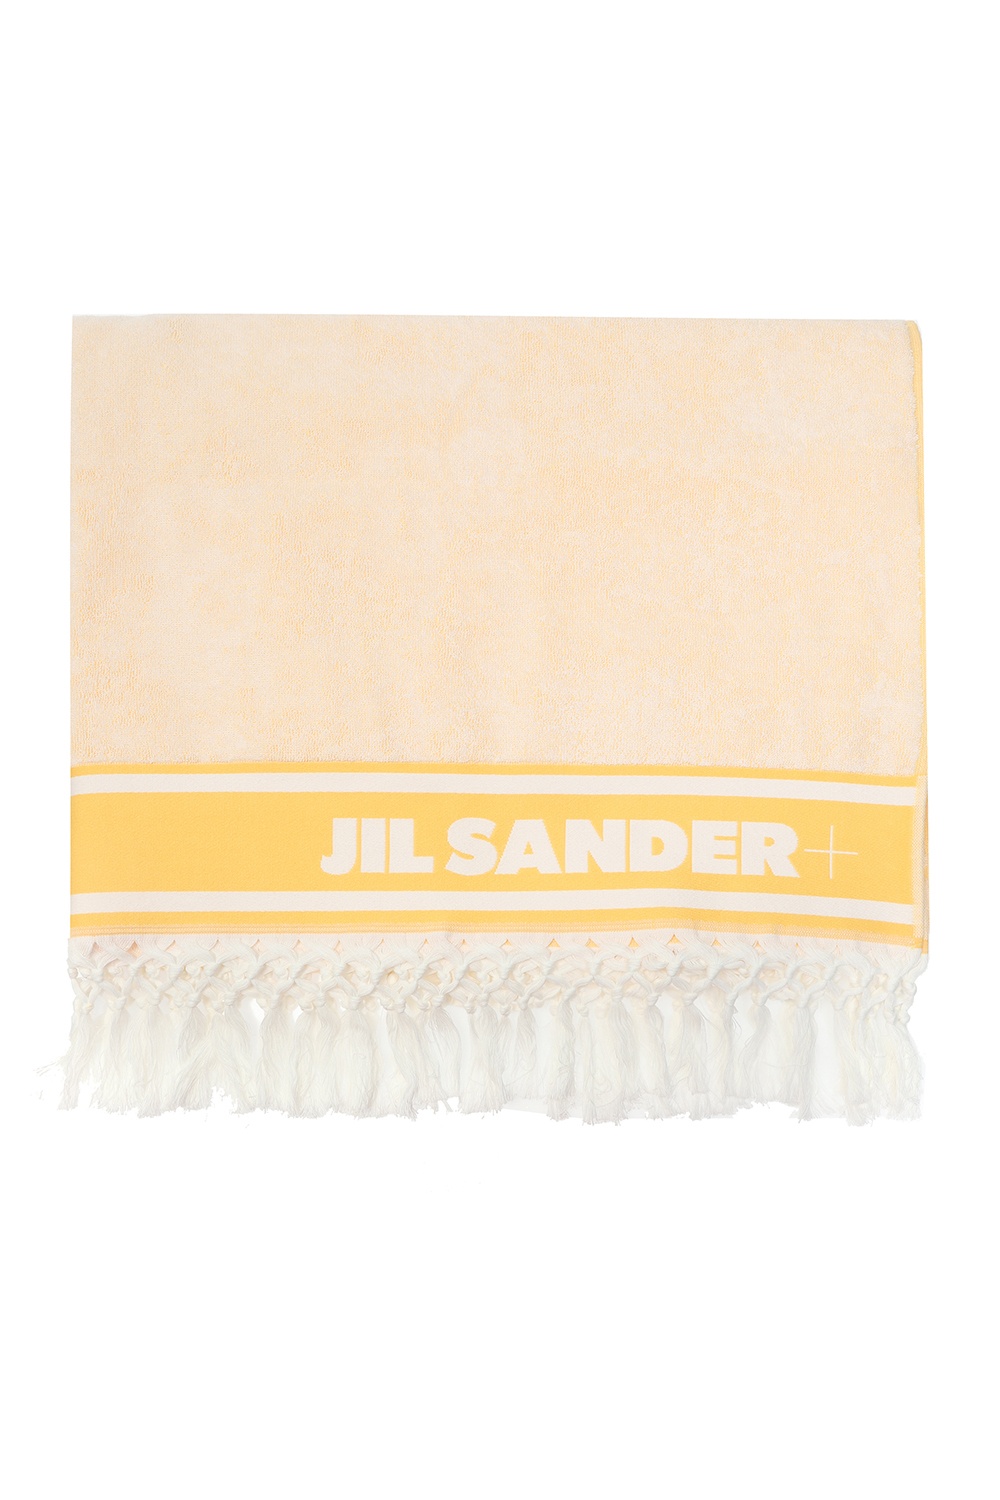 JIL SANDER jil sander tangle small suede shoulder bag